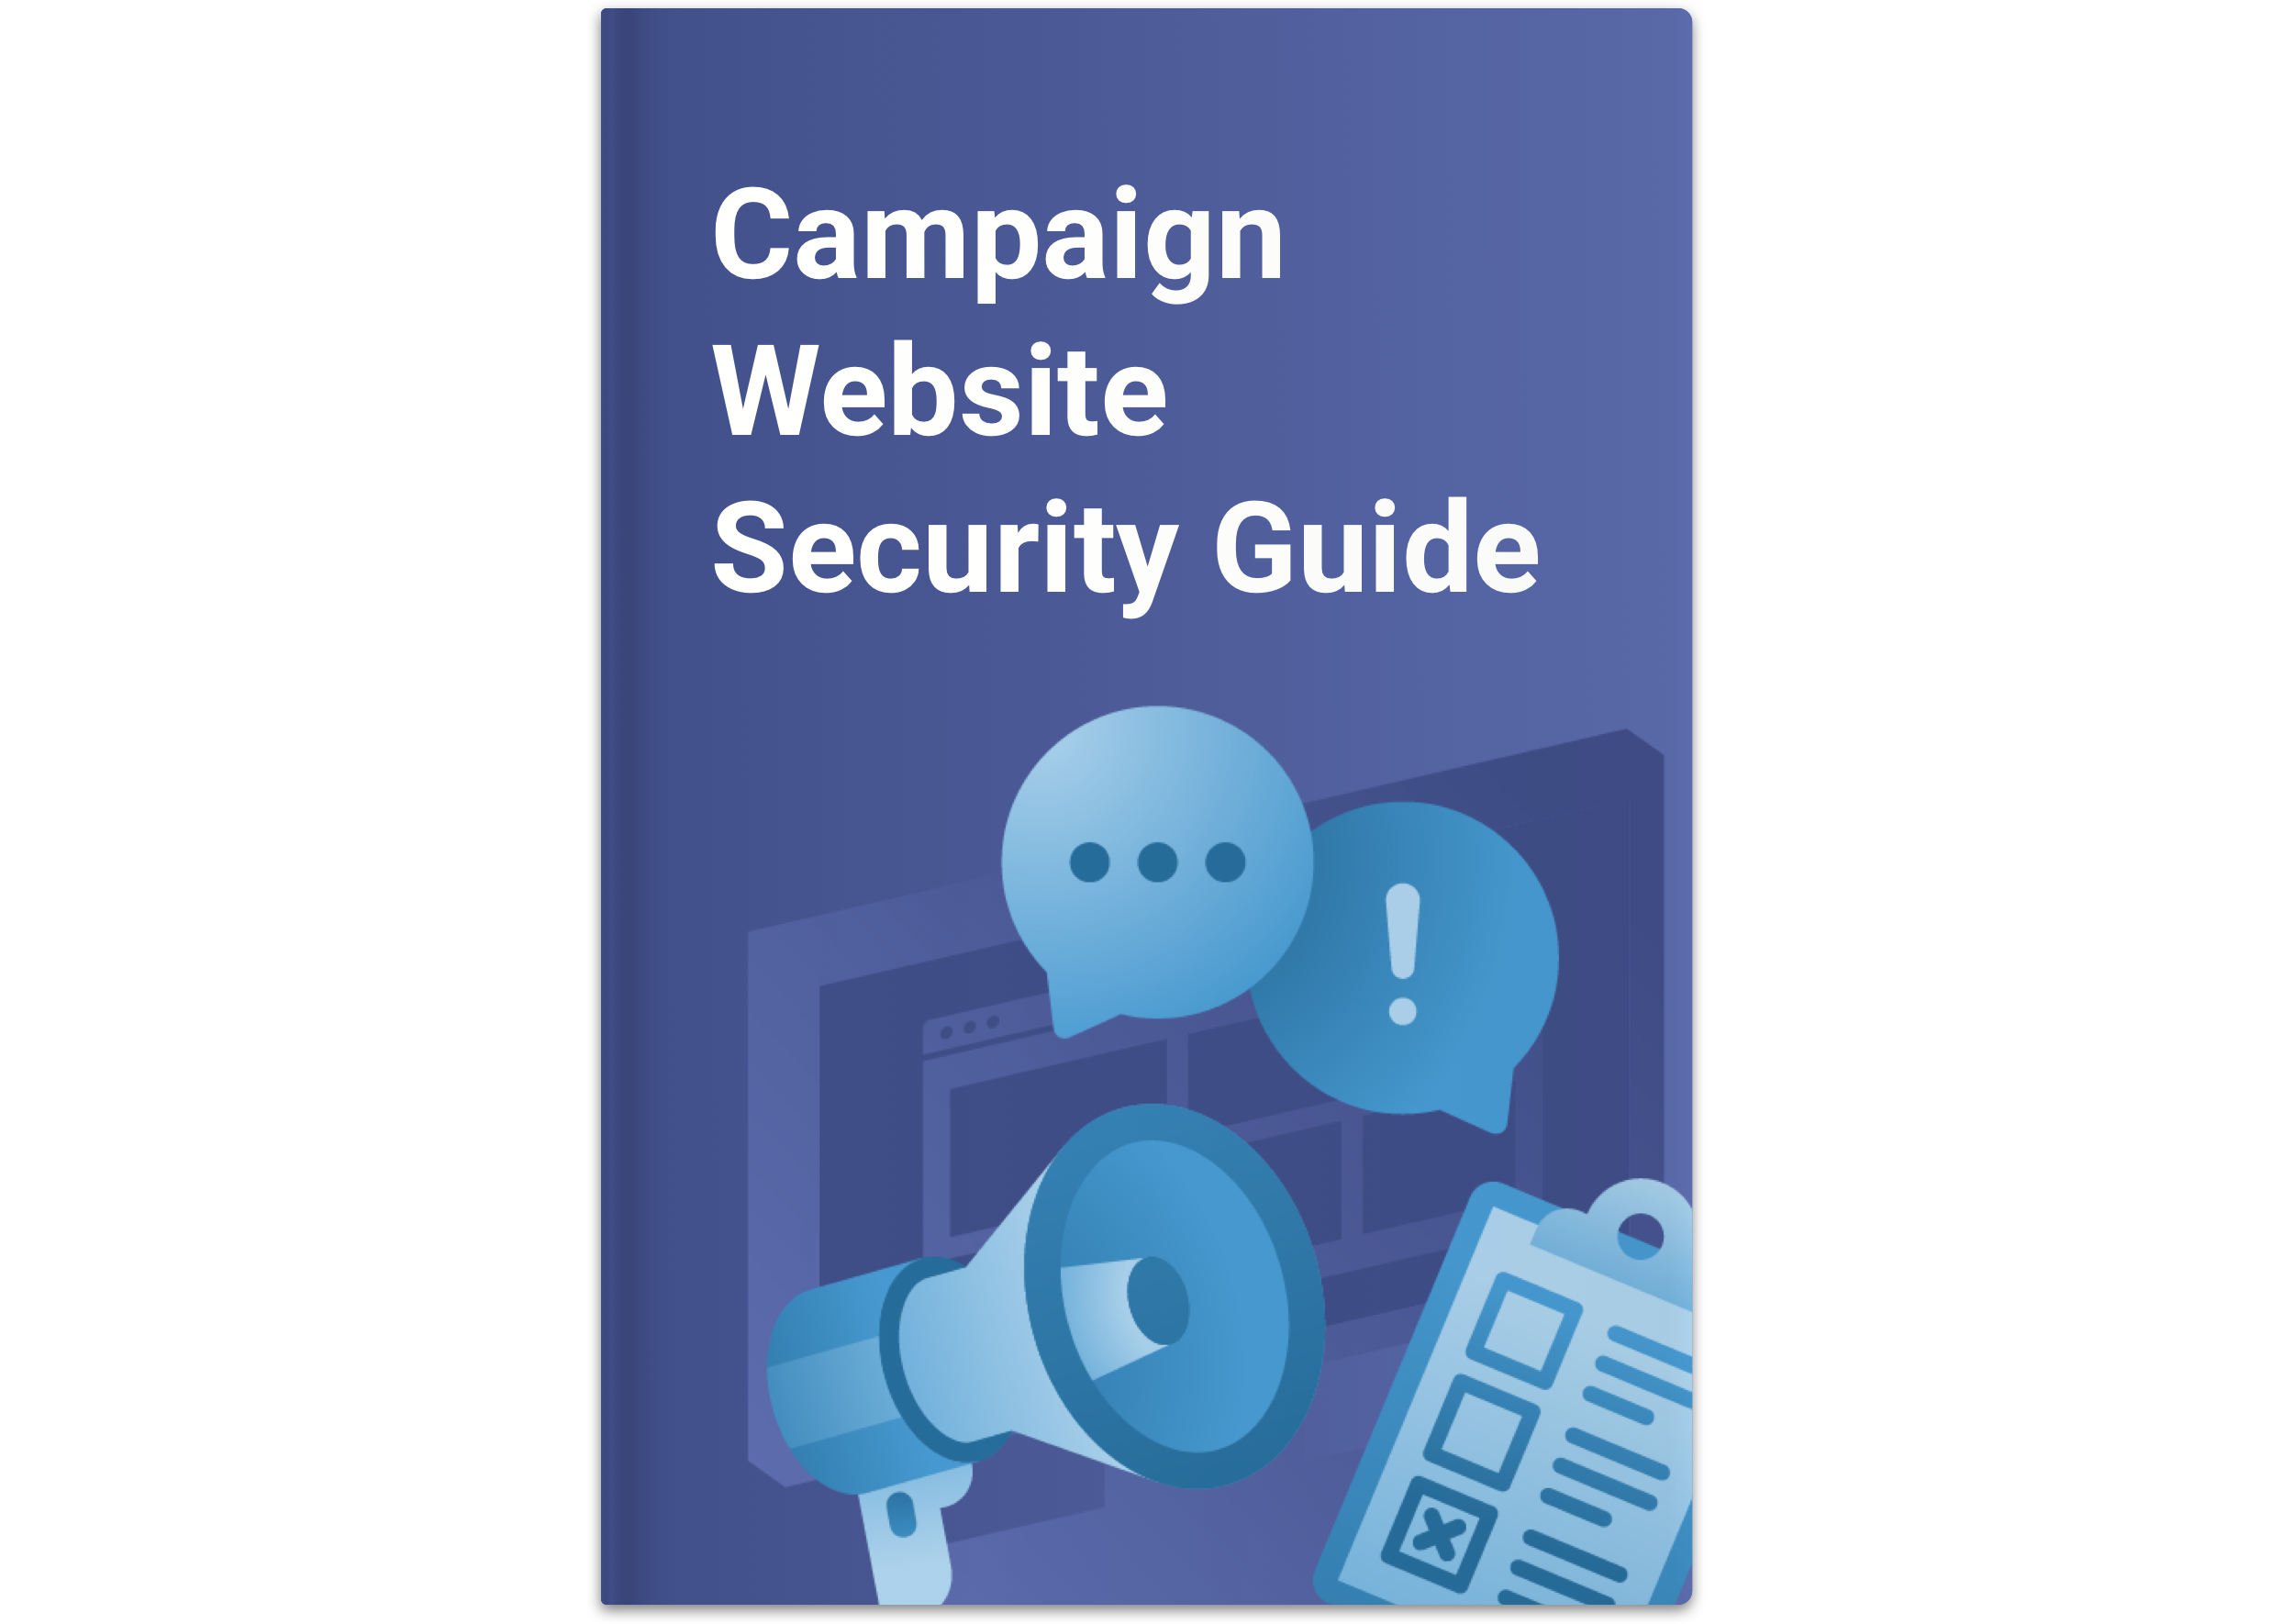 CF for Campaigns: Copertina della Guida alla sicurezza IMG
